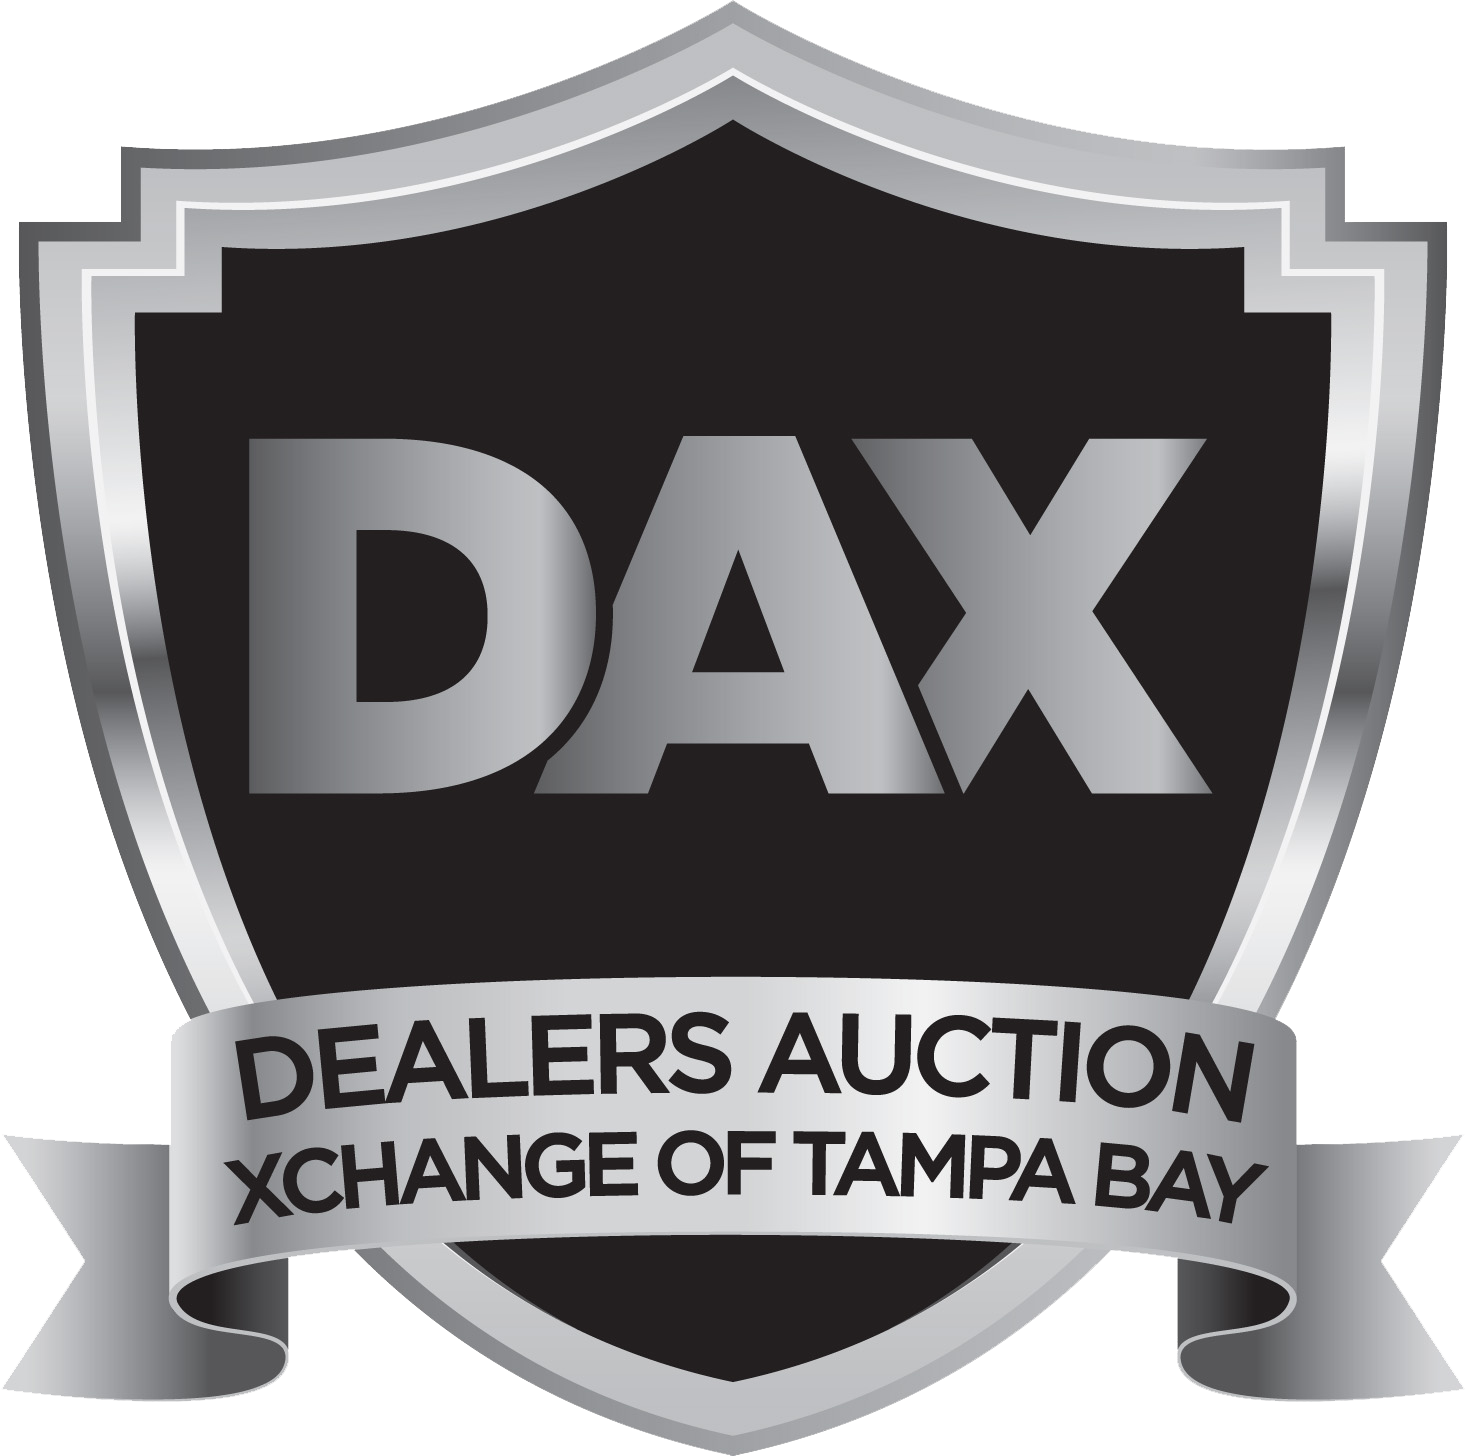 Dax Dealers Auction Xchange